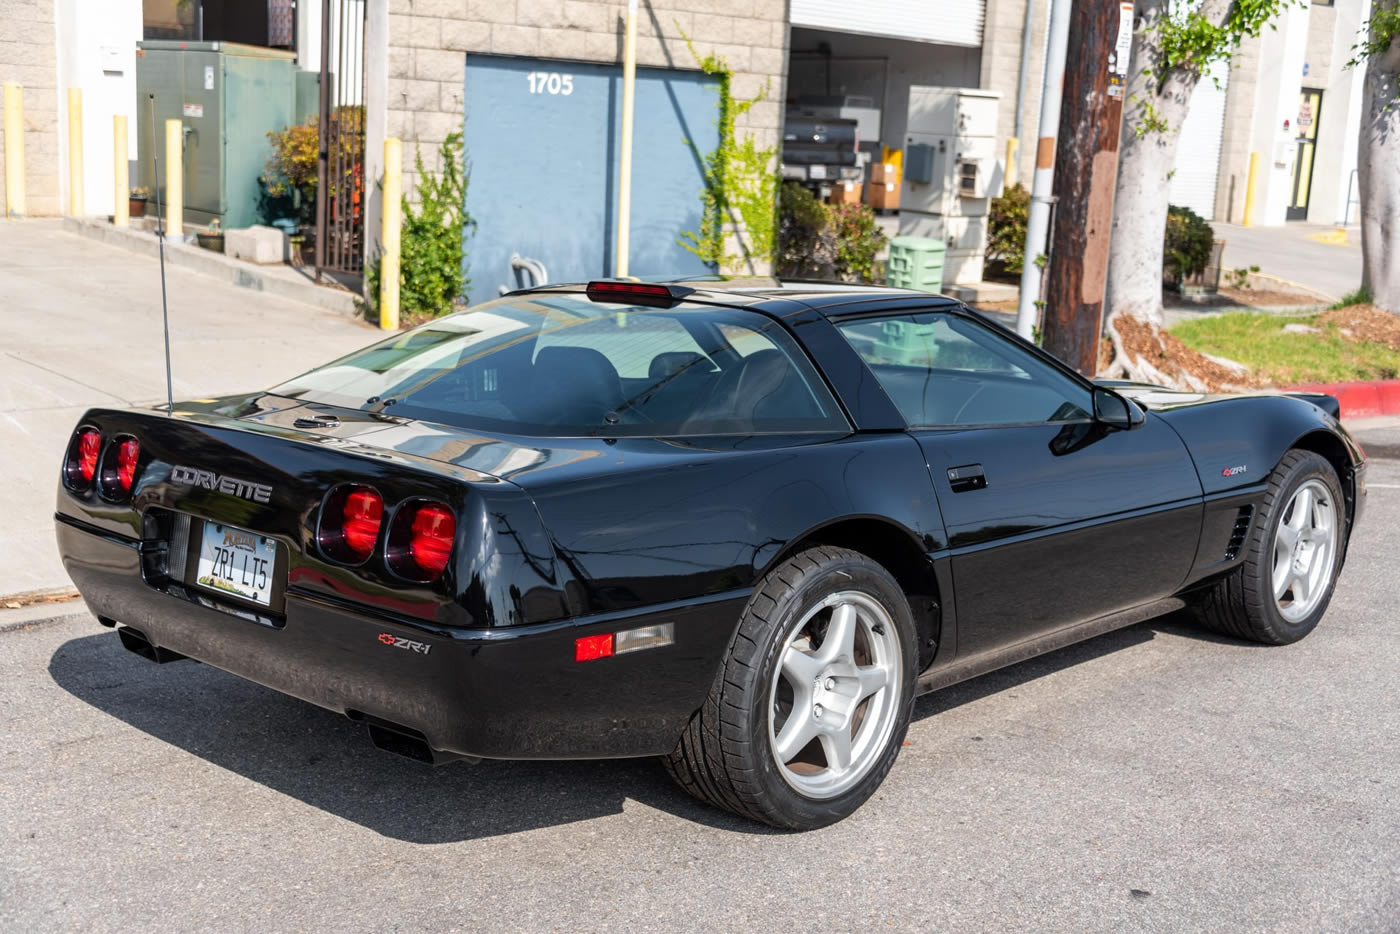 1995 Corvette ZR-1 in Black